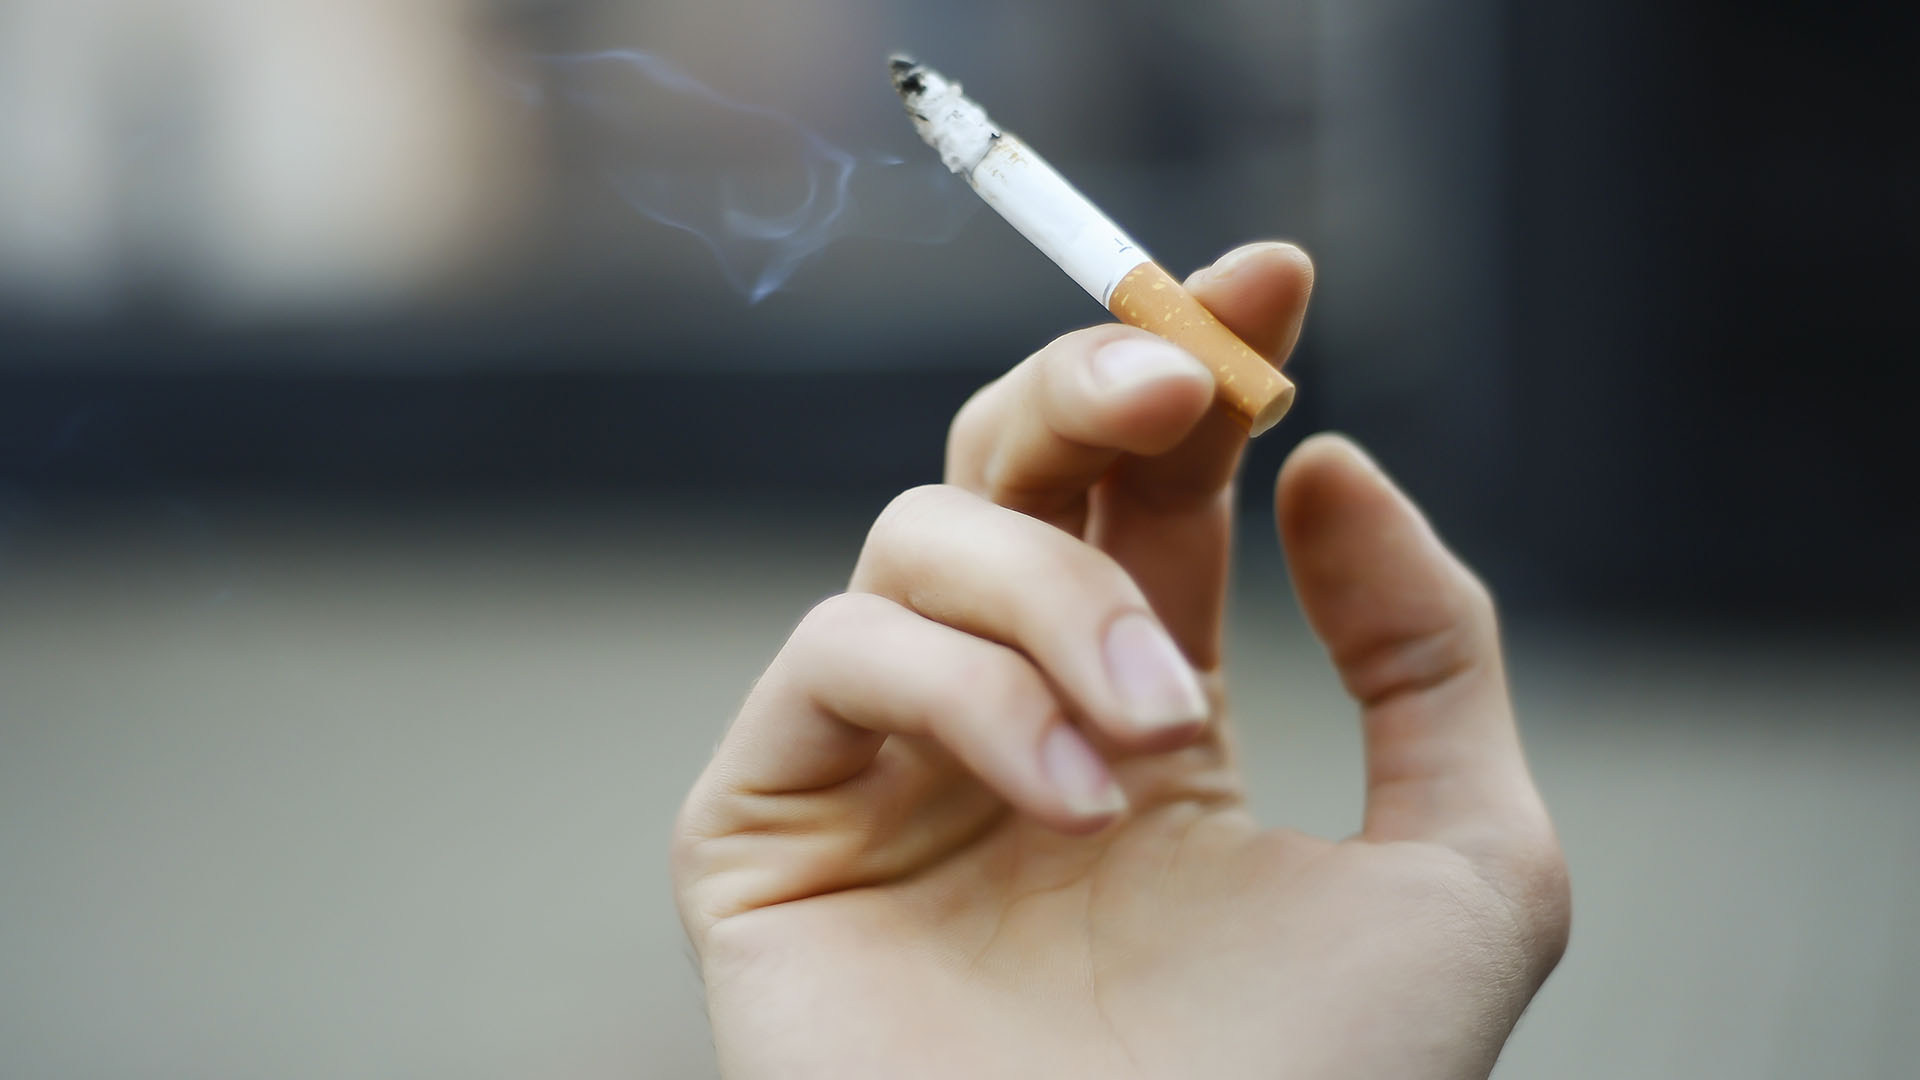 Fumar puede causar cáncer y luego impedir que el cuerpo lo combata. Las sustancias tóxicas en el humo del cigarrillo pueden debilitar el sistema inmunitario del cuerpo, lo cual hace más difícil matar las células cancerosas. Cuando esto pasa, las células se siguen multiplicando sin que nada las detenga (Getty Images)

